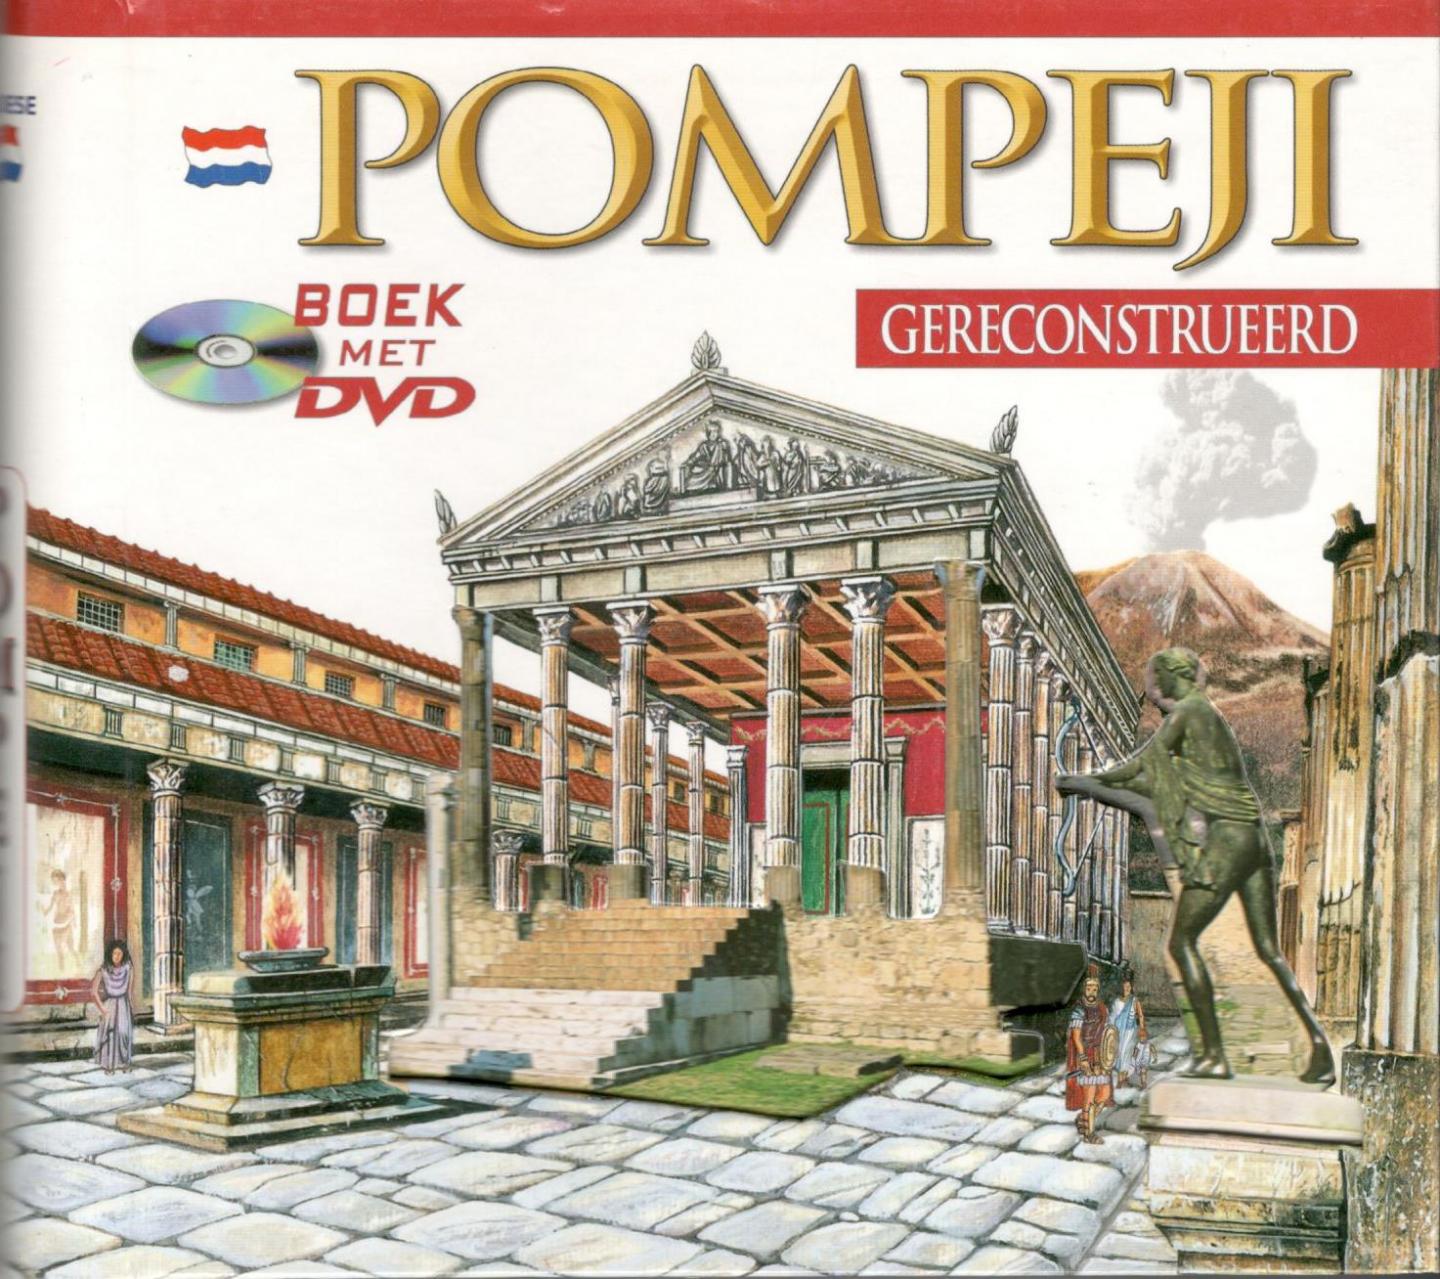 Bonaventura, Maria (teksten) - Pompeji gereconstrueerd.  Archeologische gids van Pompeji met reconstructie van de oorspronkelijke luister en de huidige staat. Met Herculaneum en Villa Jovis op Capri